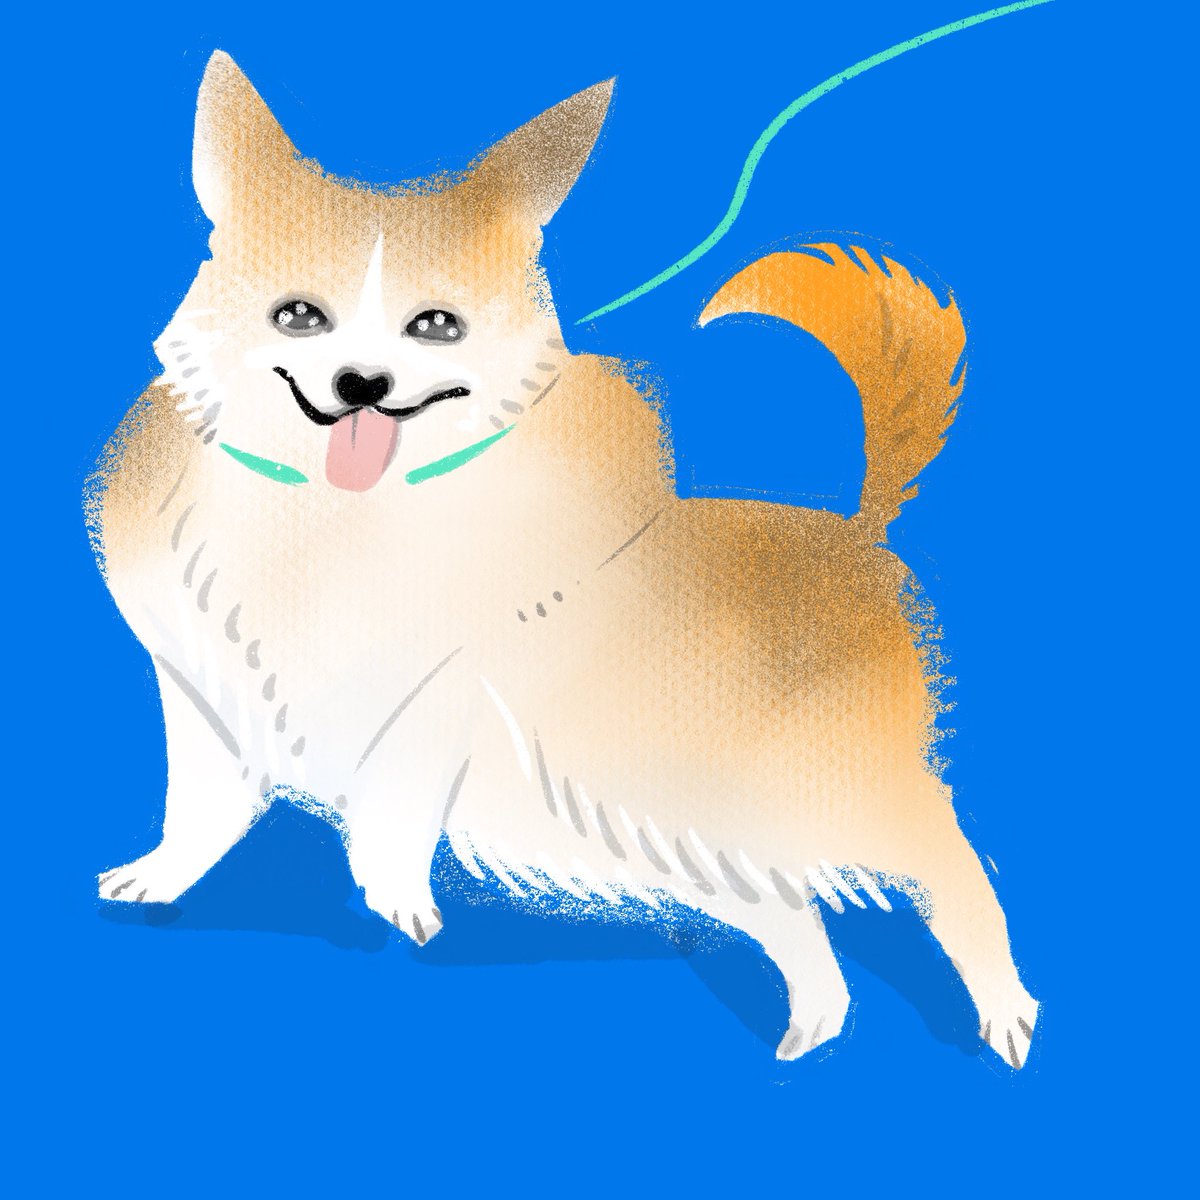 「今まで描いた犬。#犬の日 」|谷口 菜津子のイラスト